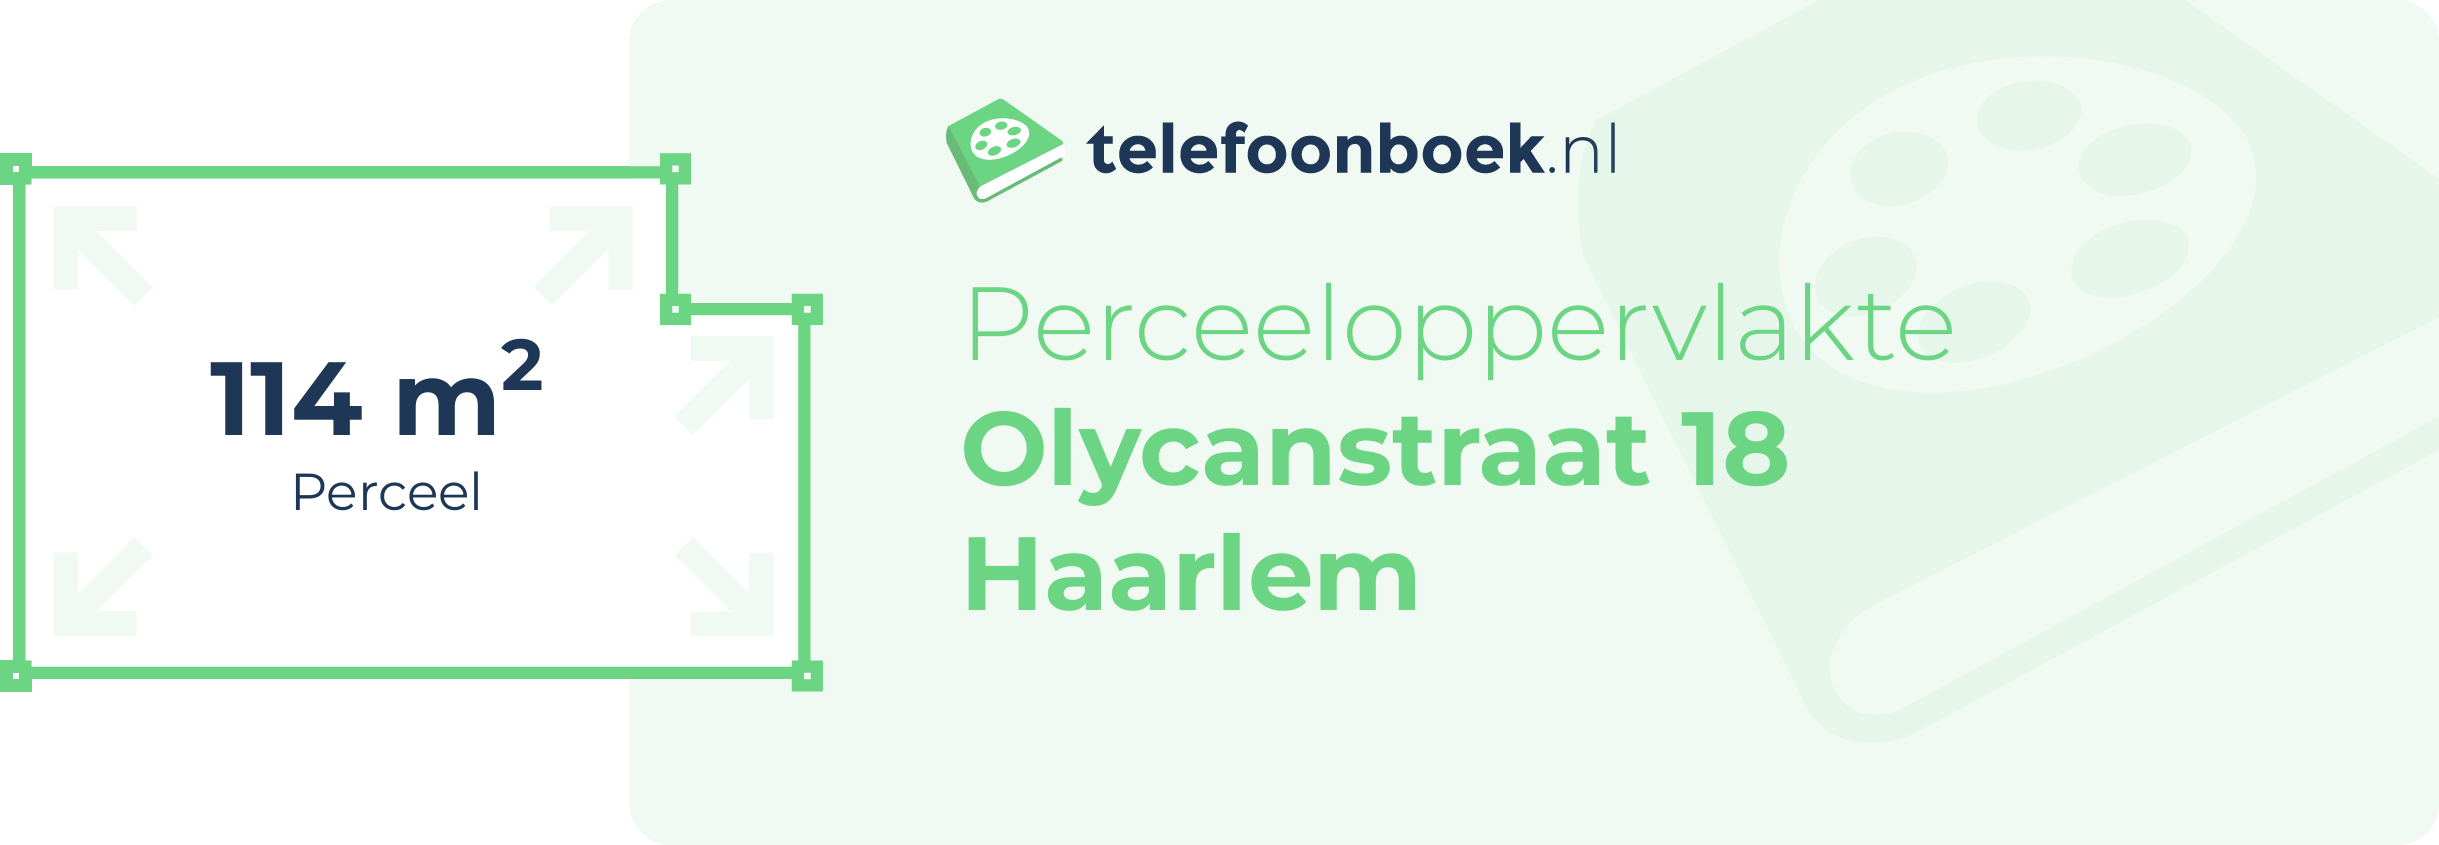 Perceeloppervlakte Olycanstraat 18 Haarlem